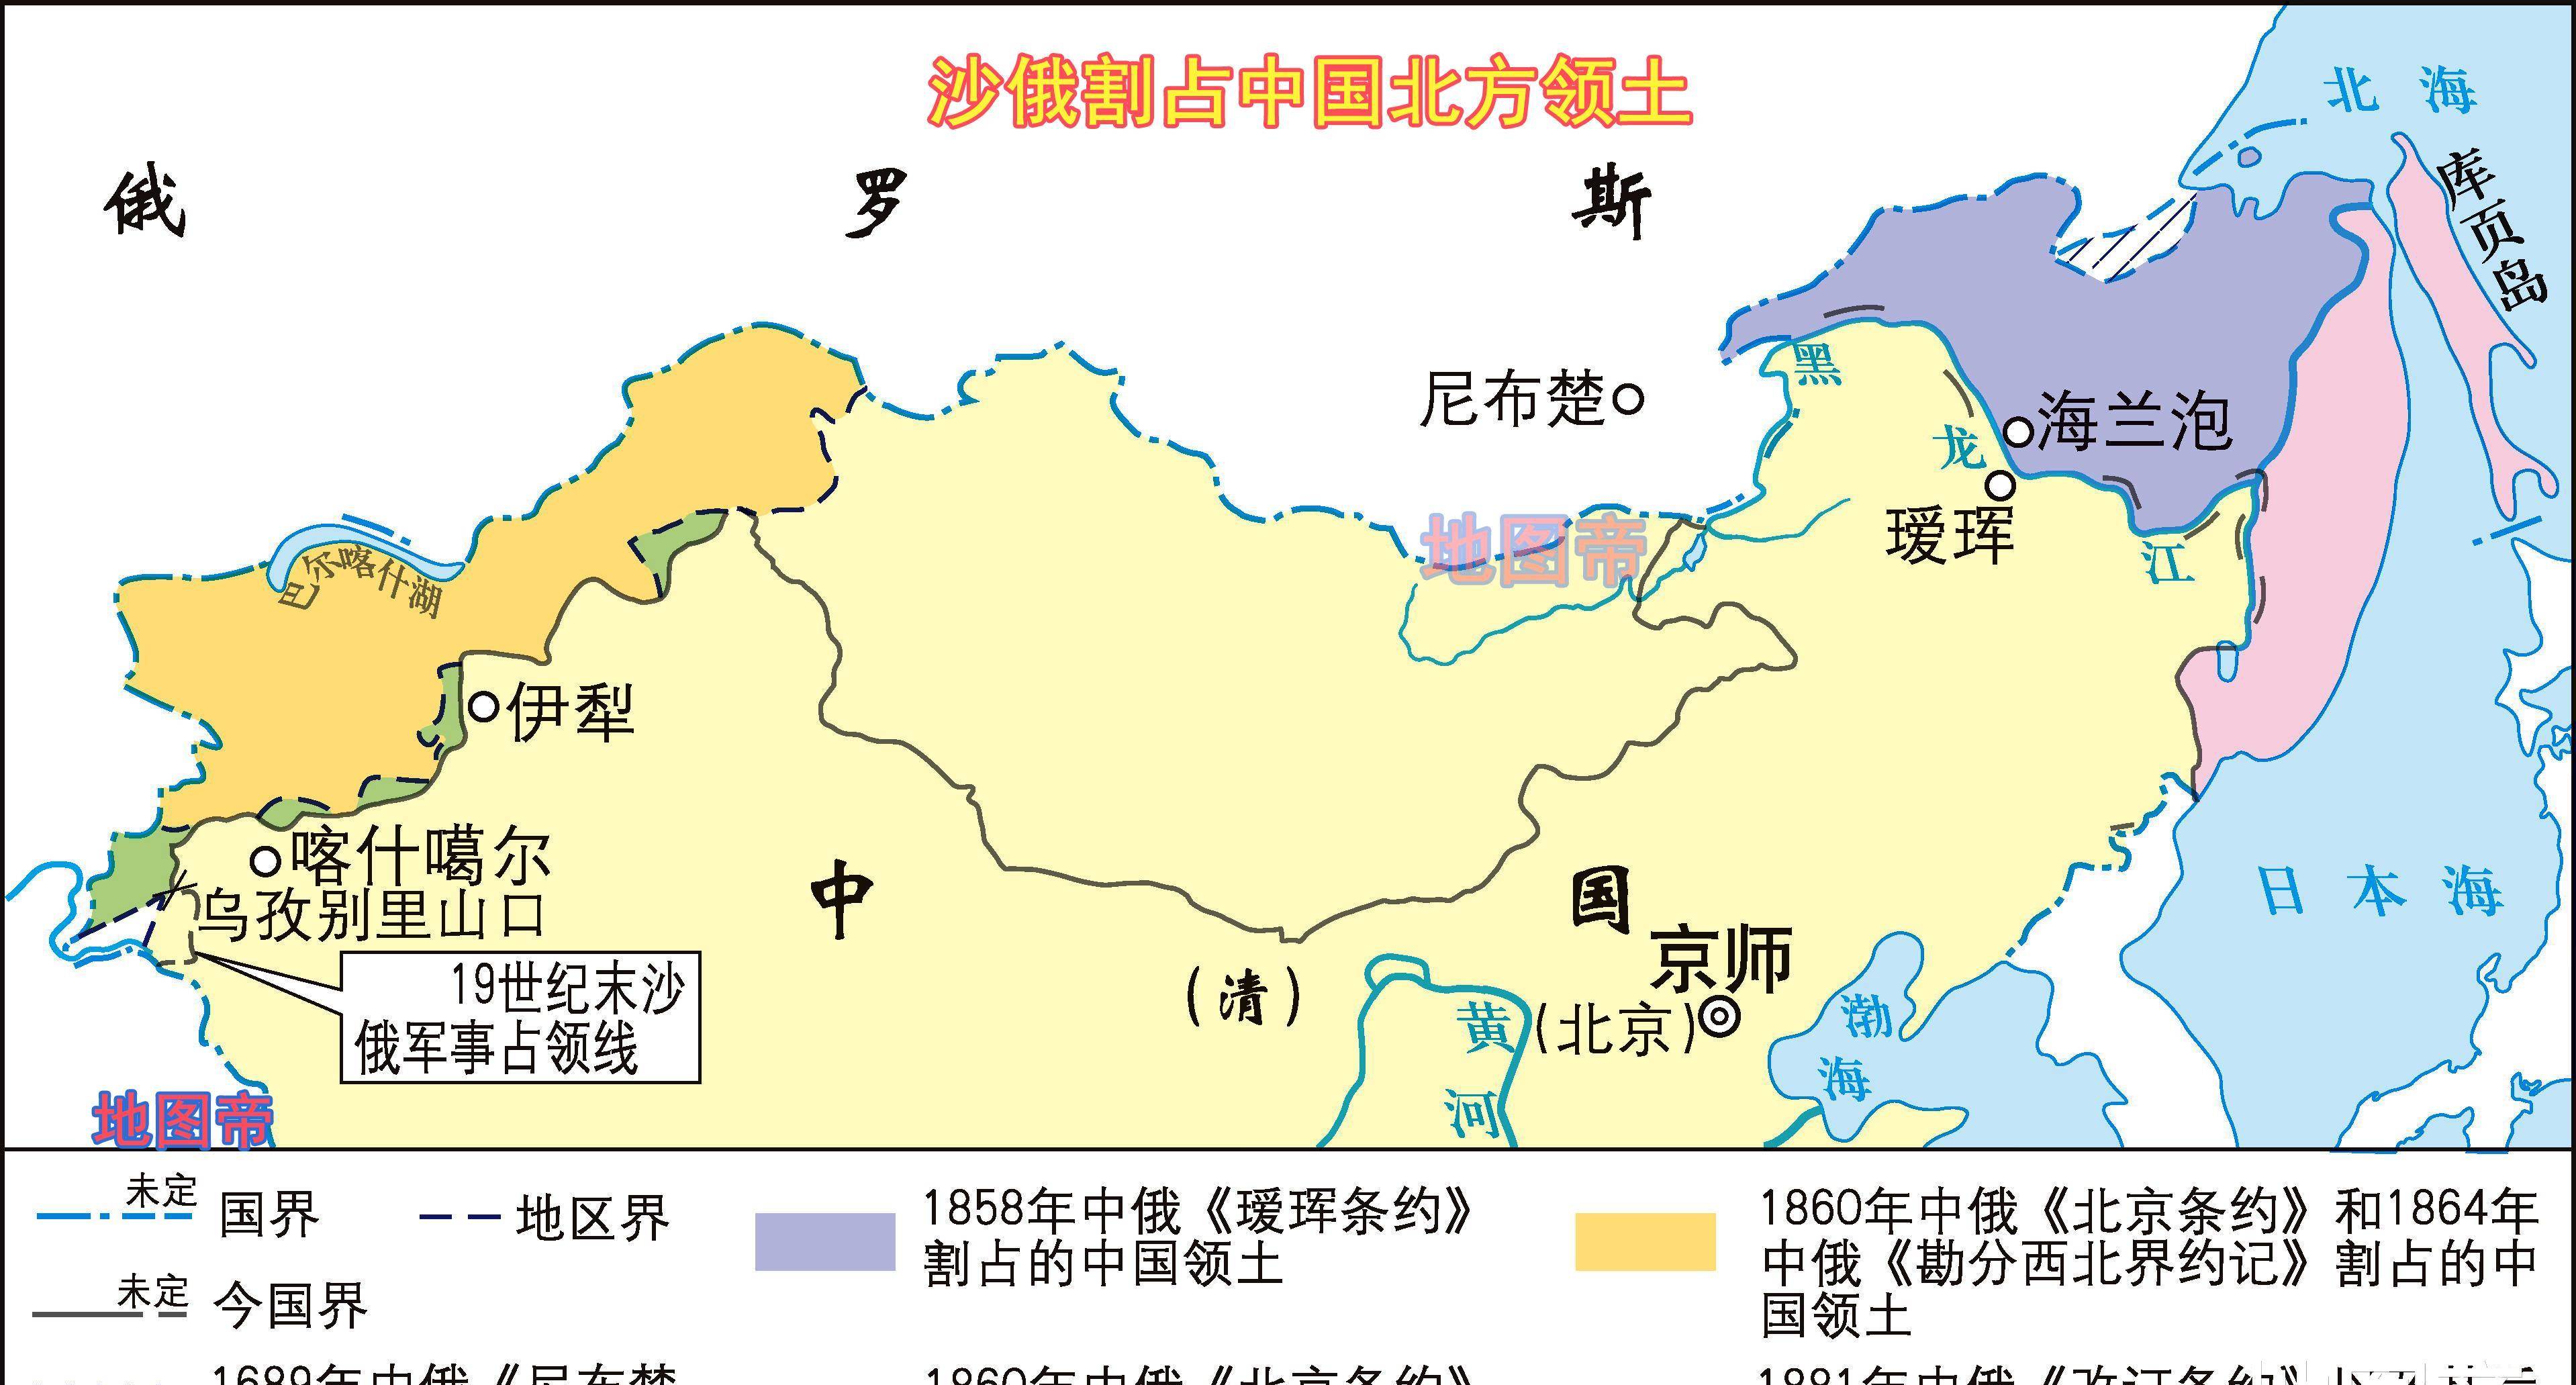 中国新增29万领土图 中国快要收复的领土